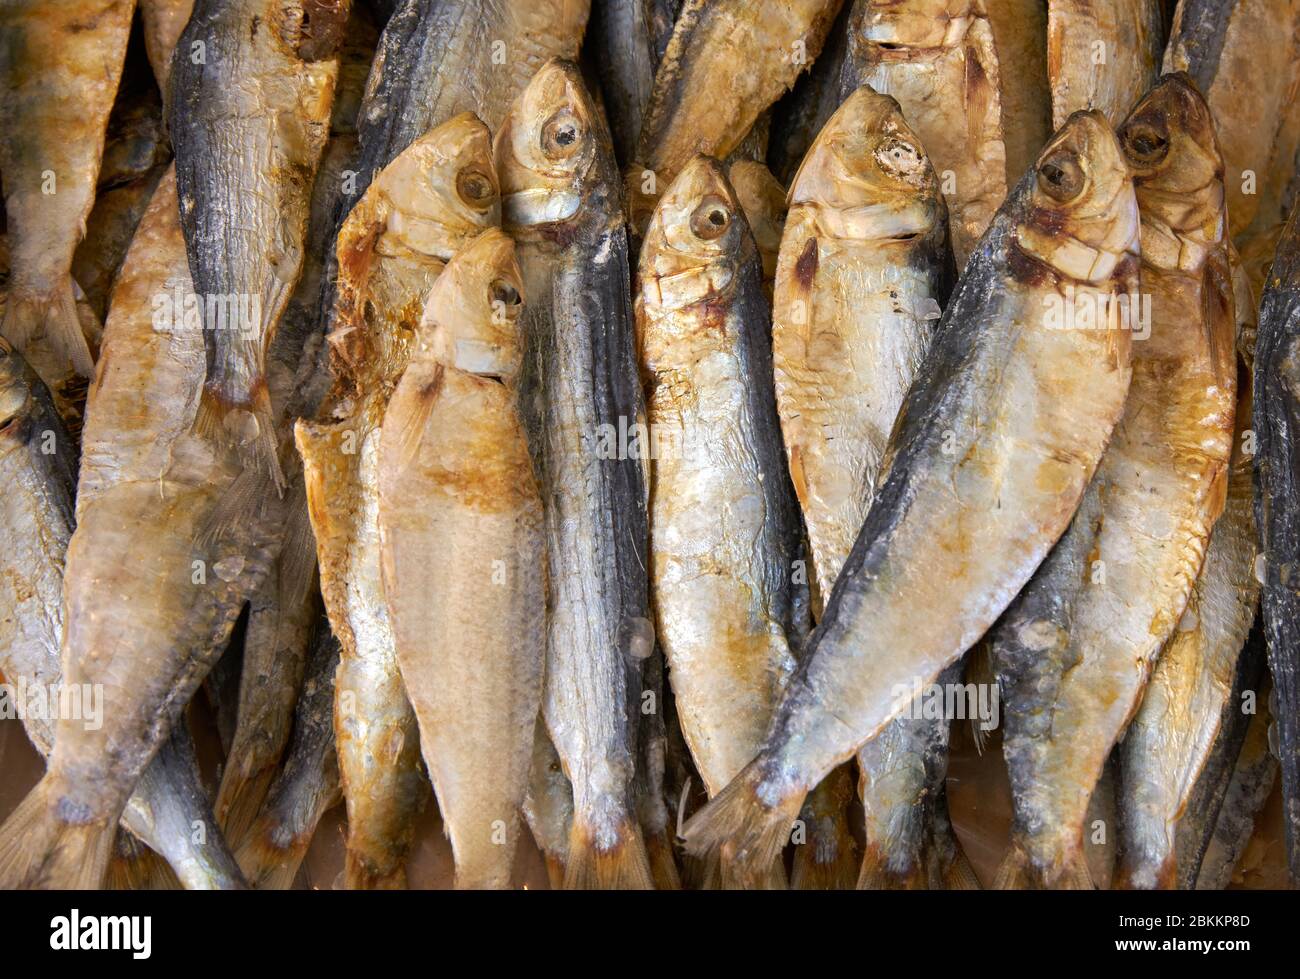 Chinesischer Markt Für Getrocknete Fische. Kleiner getrockneter Fisch auf einem asiatischen Markt. Stockfoto